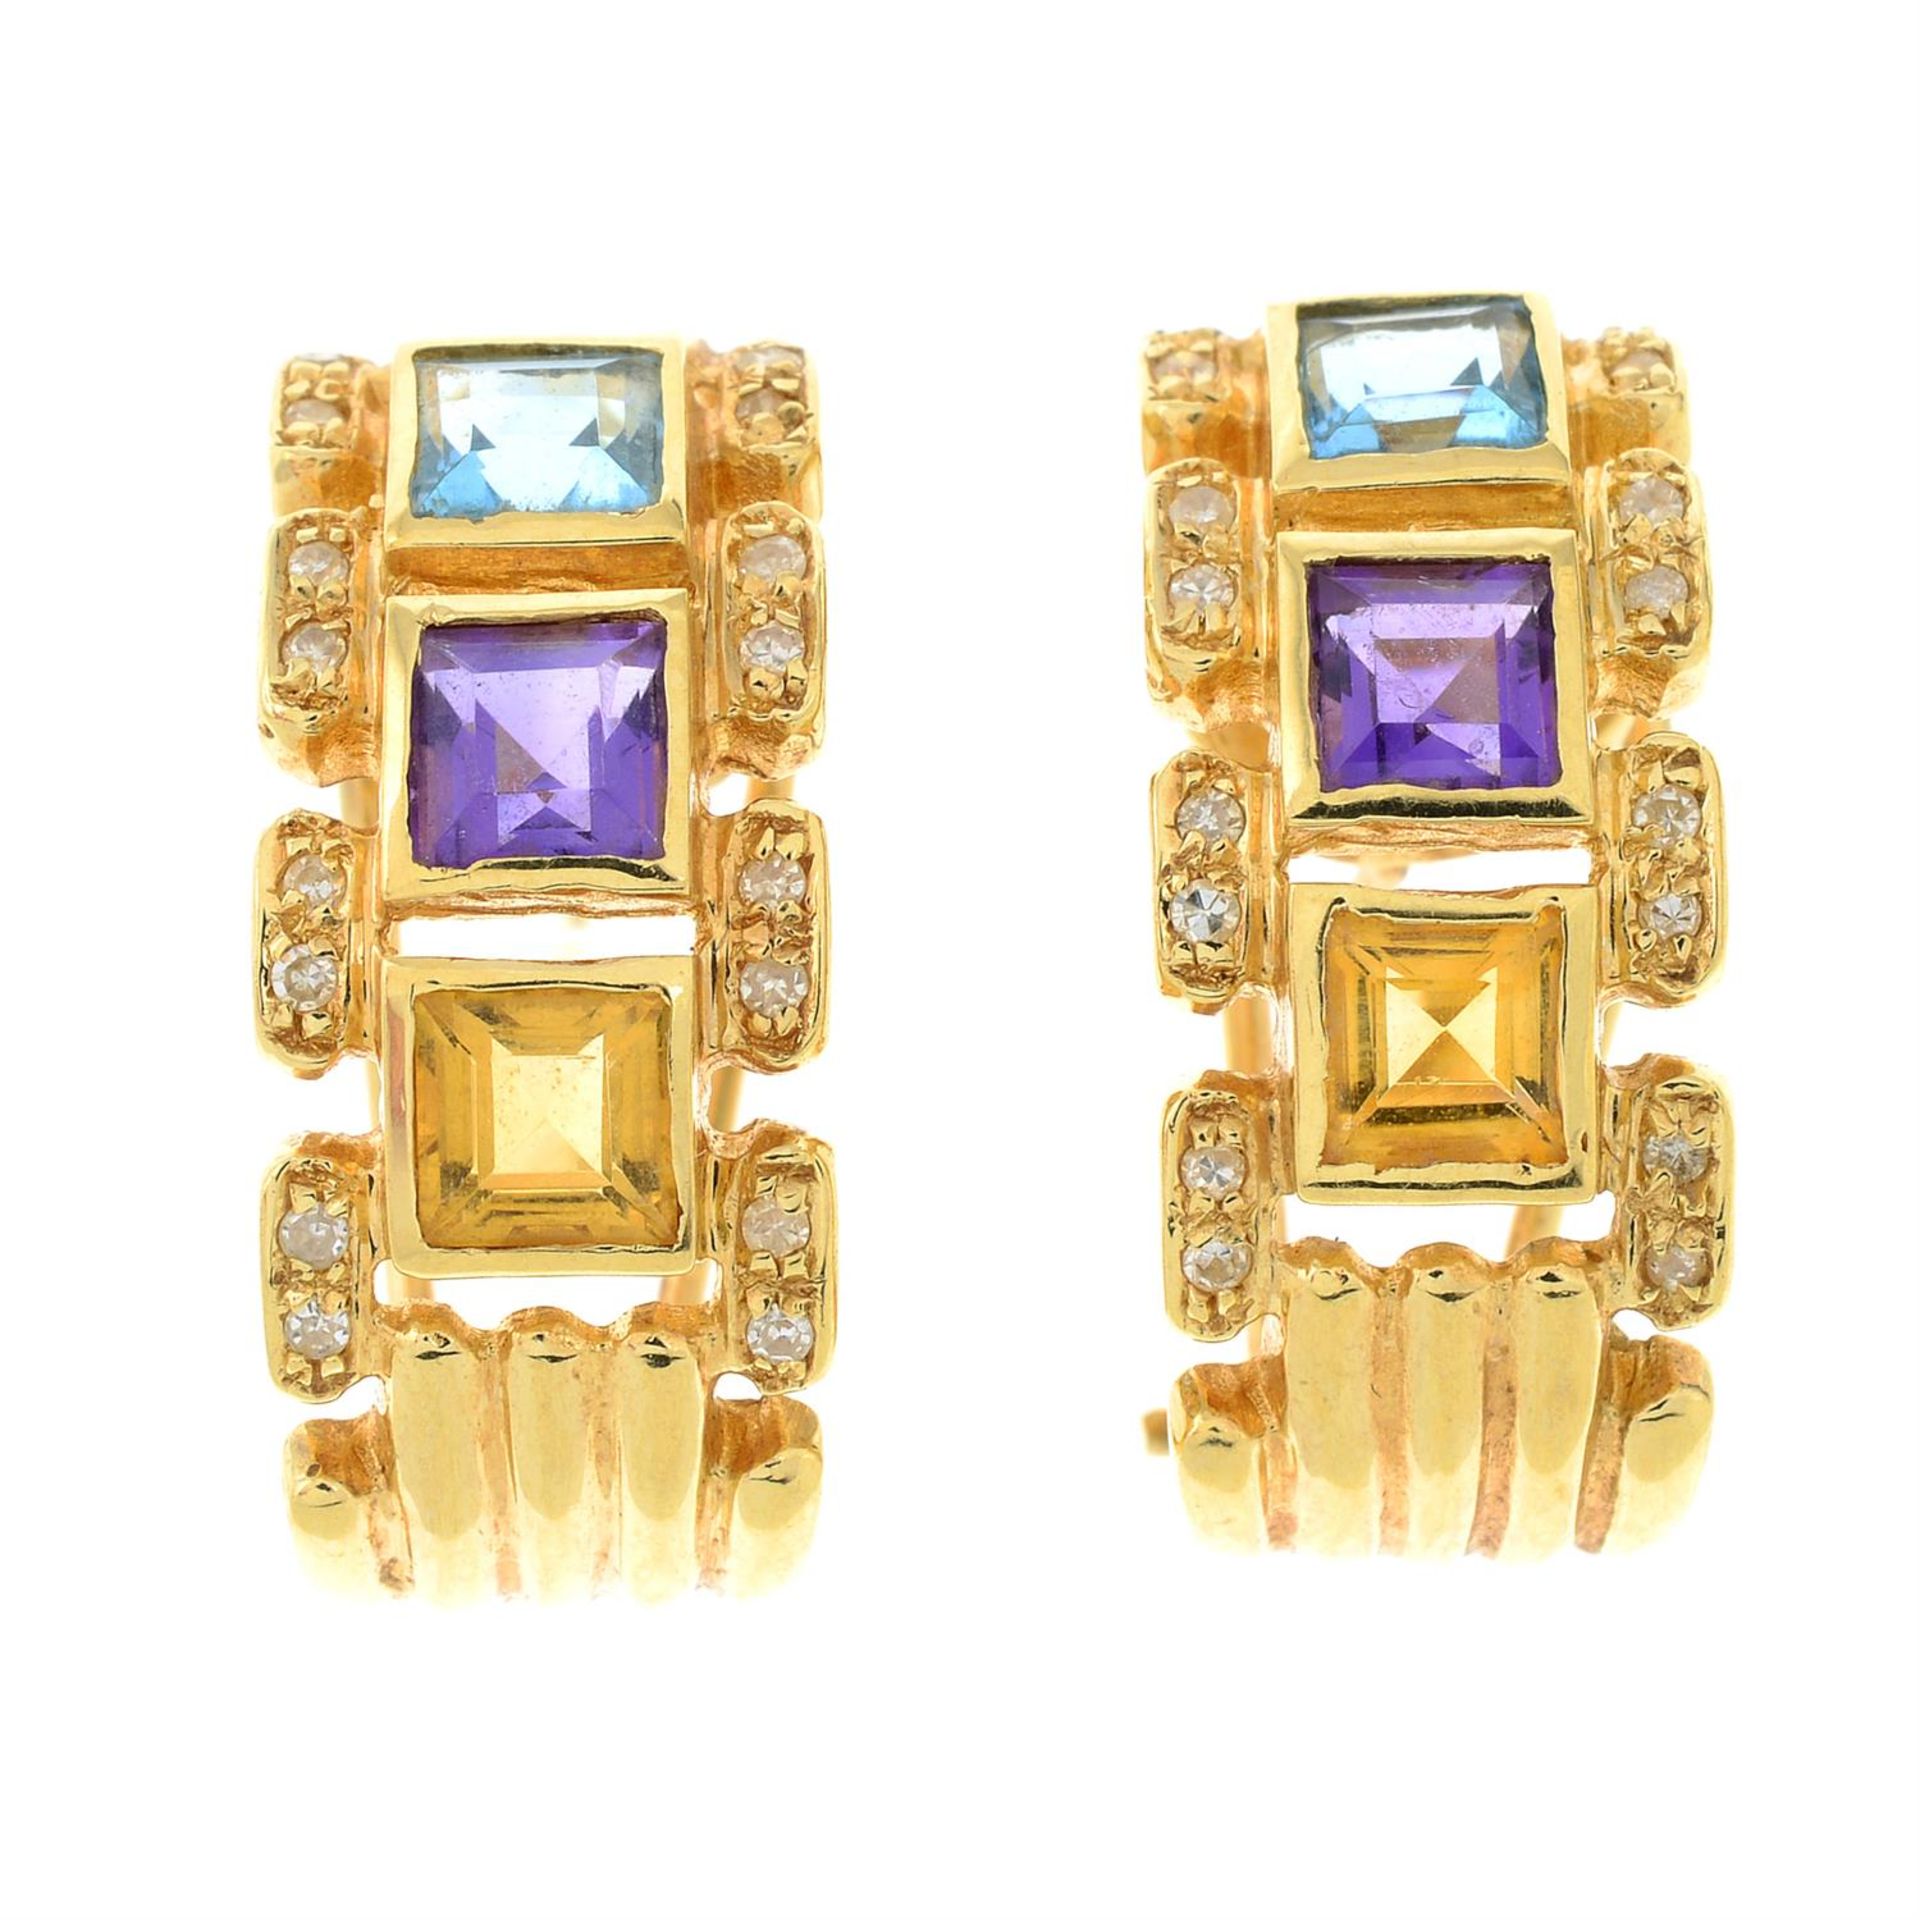 A pair of single-cut diamond and gem-set earrings.